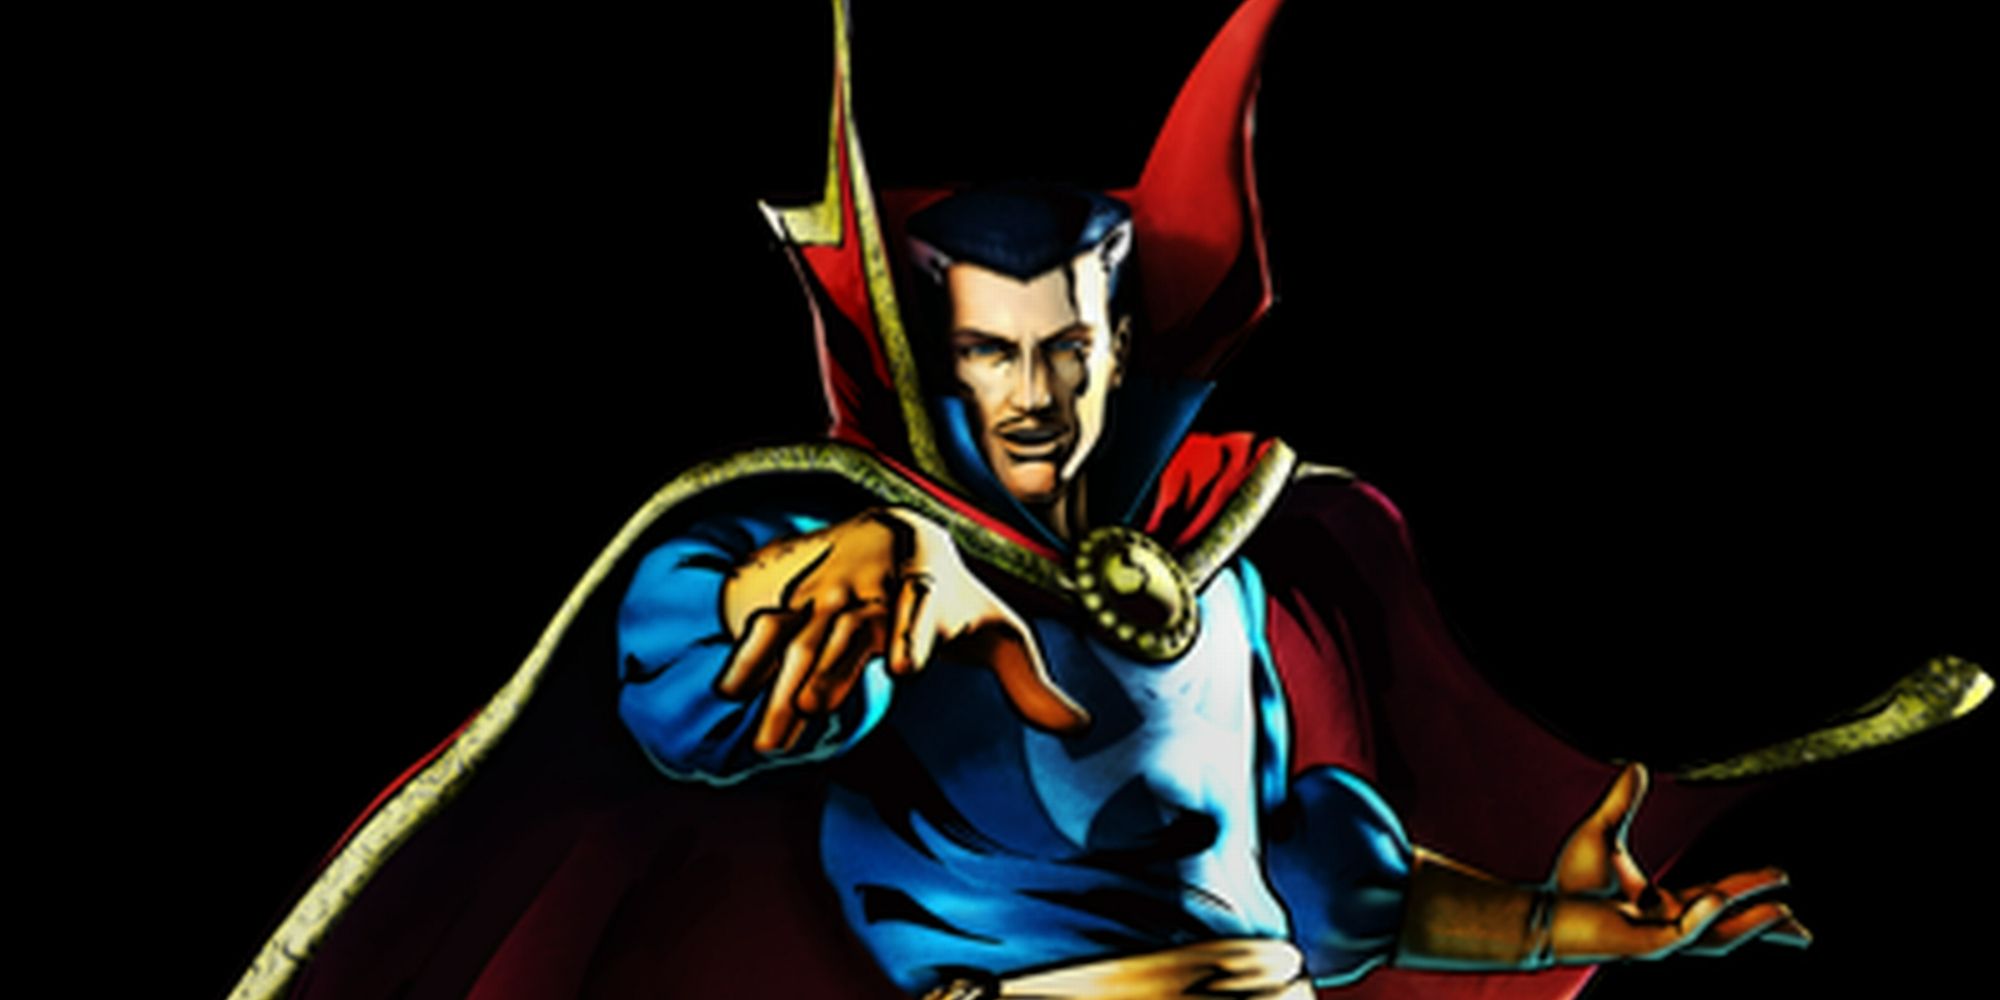 Doctor Strange casting a spell in Marvel Comics